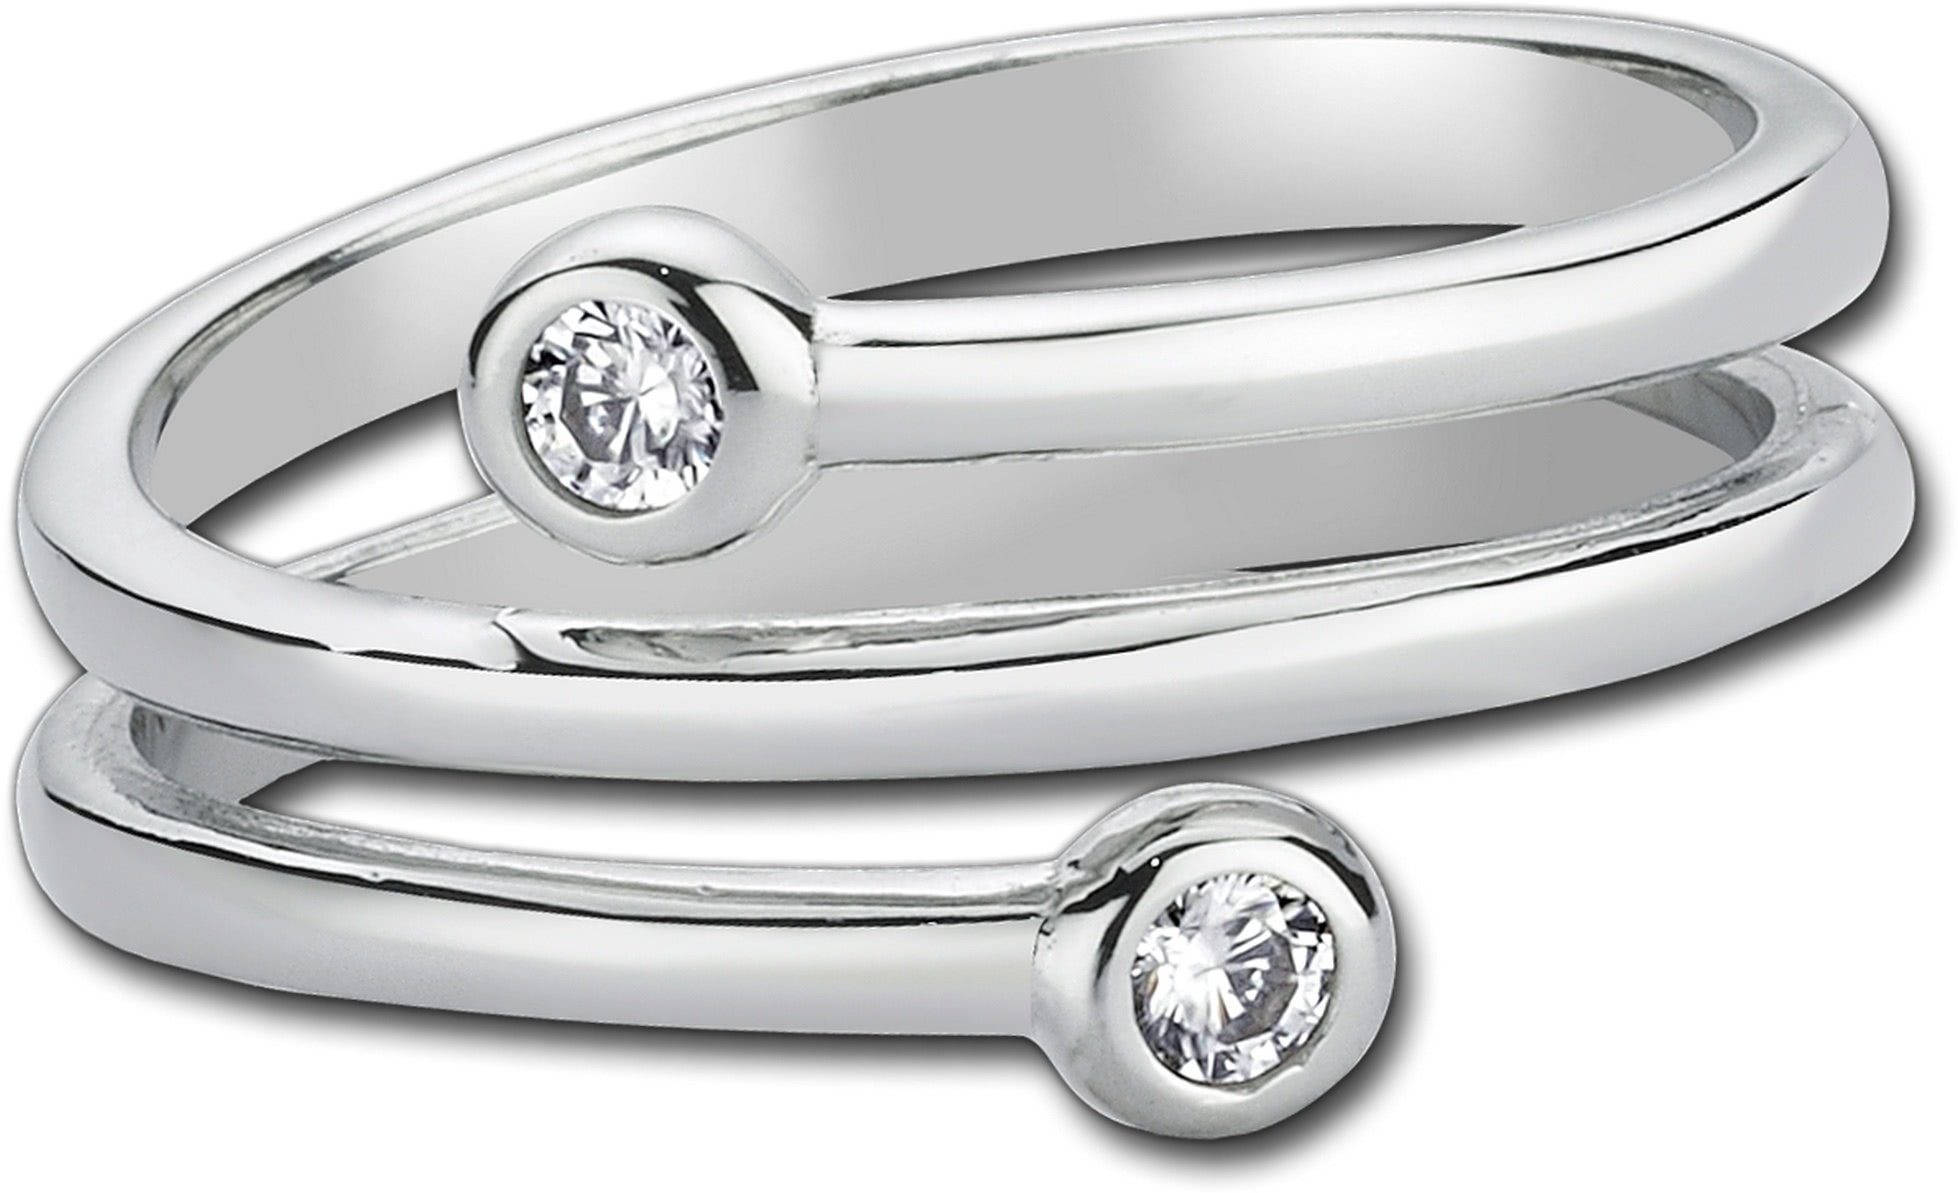 Balia 925 Zirkonia (Dream) für Fingerring Balia (Fingerring), weiße (17,2), Sterling Ring Silber Silber Damen Silberring 54 Größe 925